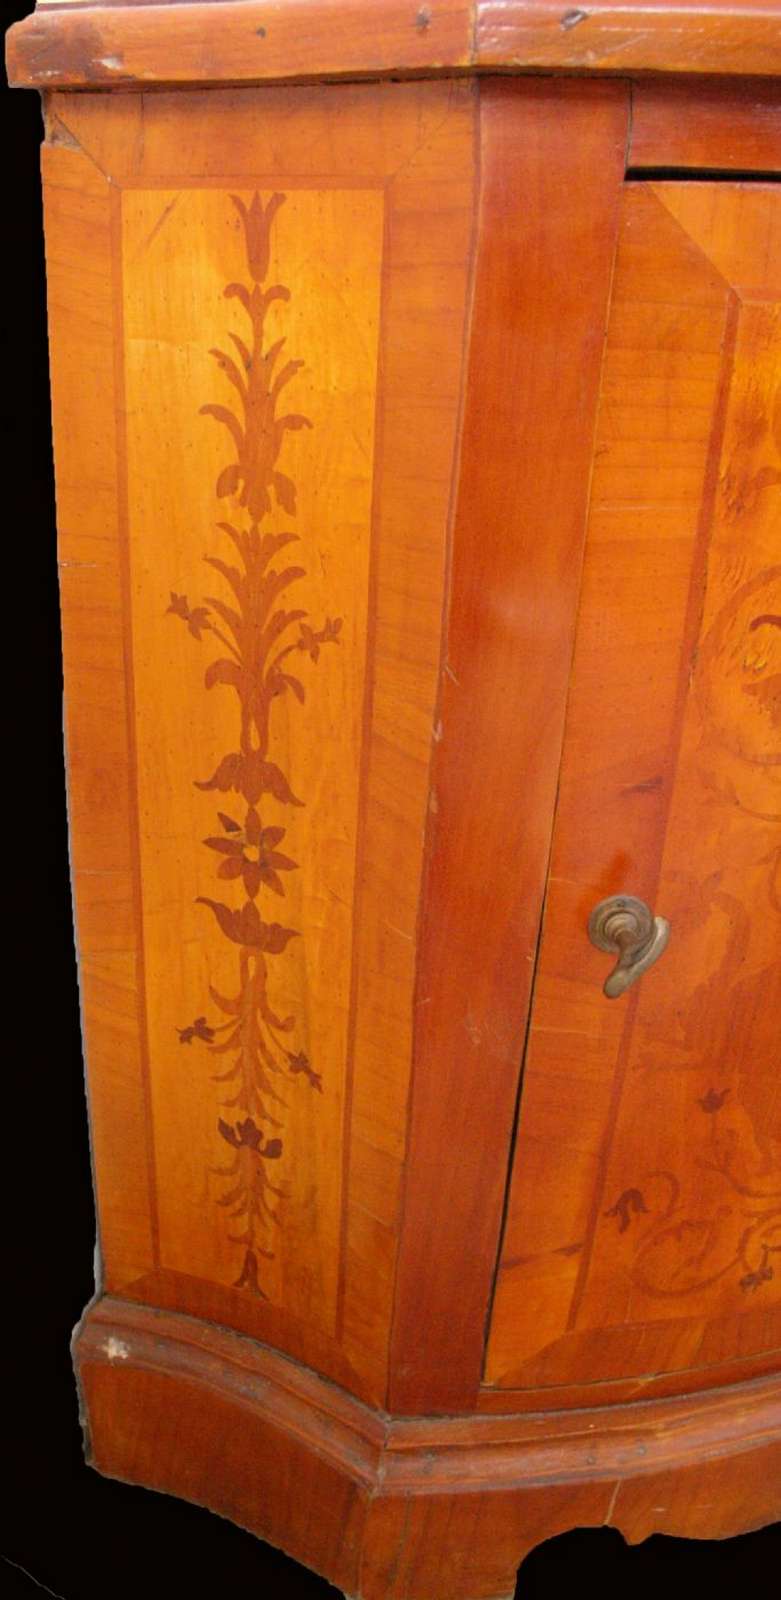 Angoliera intarsiata in legno. Epoca 1800. - 1